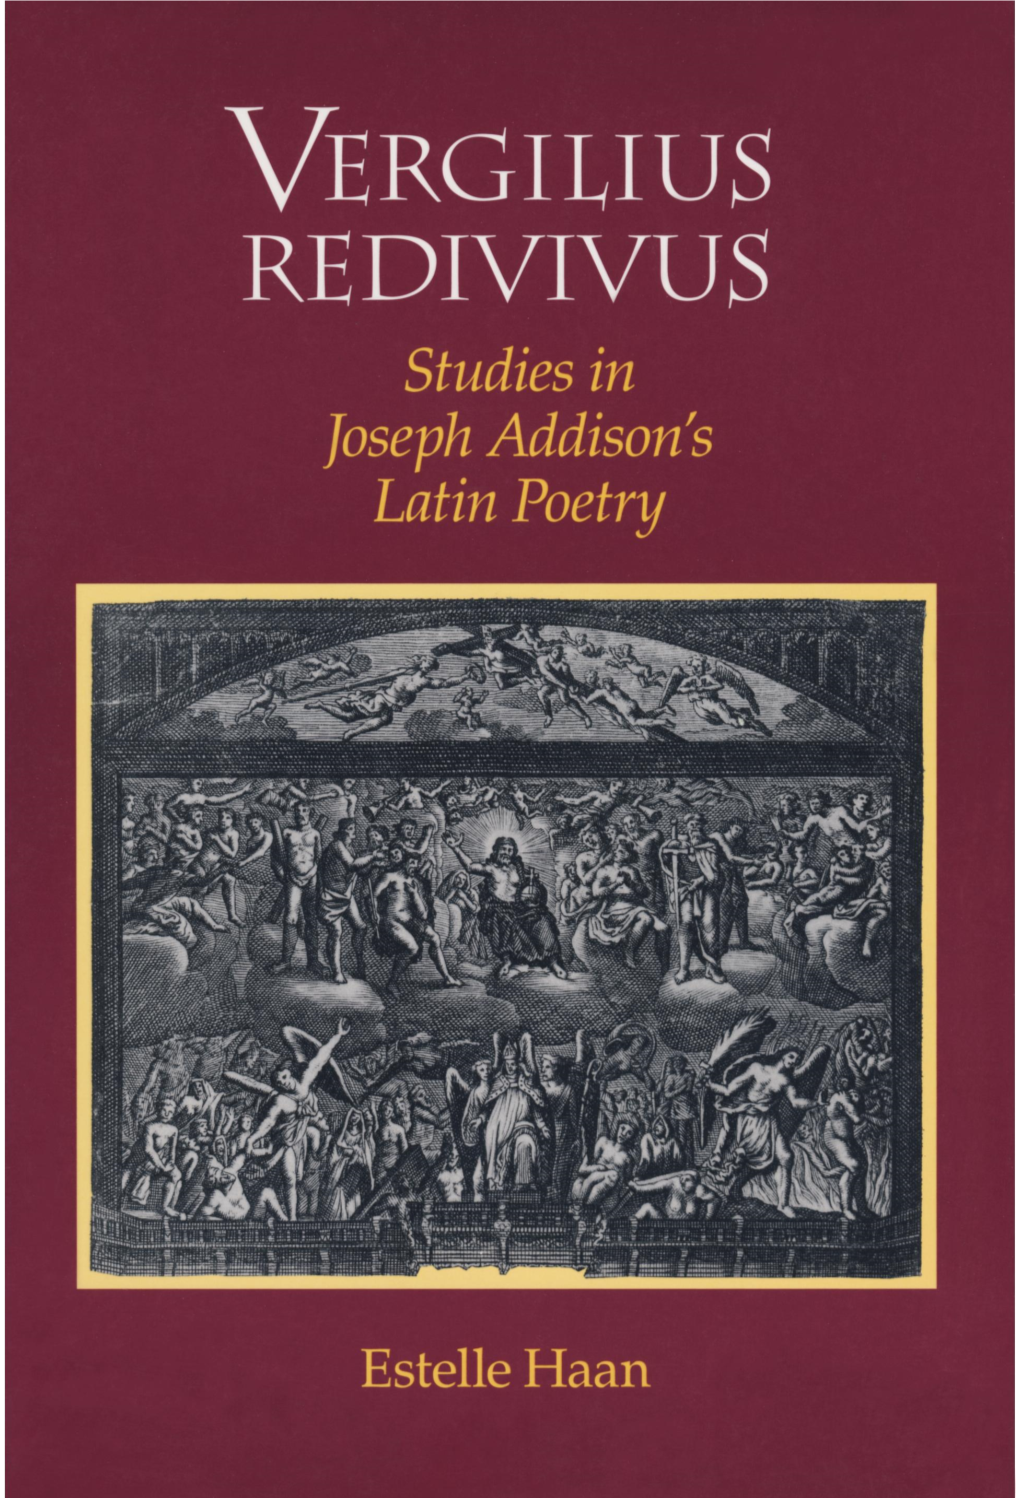 REDIVIVUS Studies in Joseph Addison's Latin Poetry